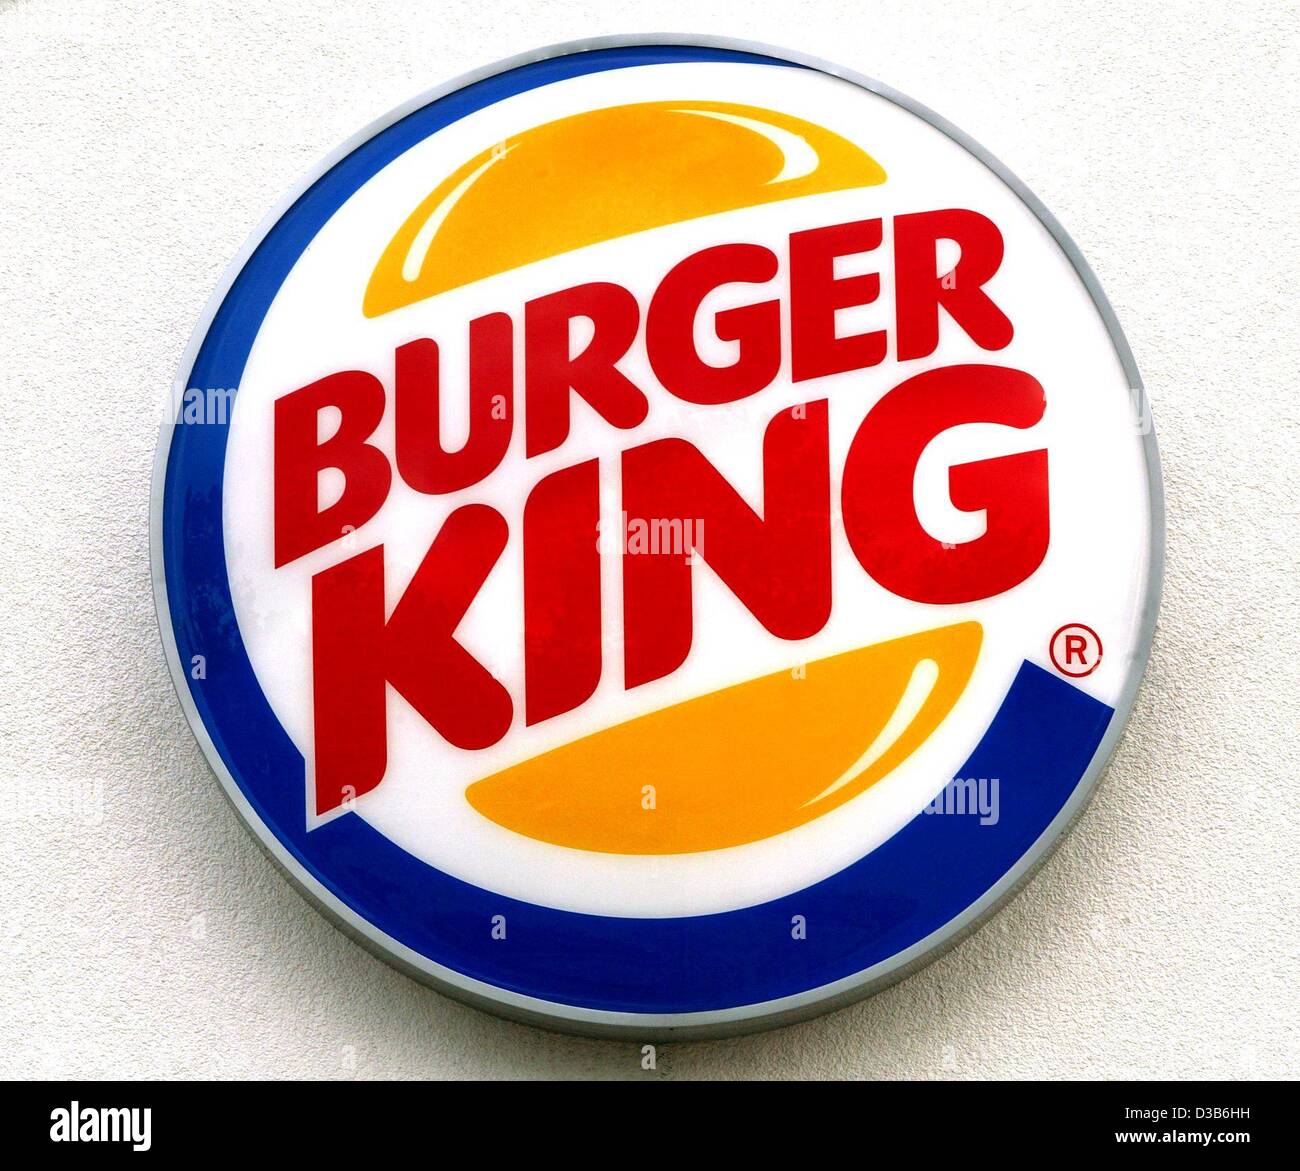 (Afp) - Le logo de la chaîne de restauration rapide Burger King, illustrée à Kiev, Ukraine, 23 août 2002. Banque D'Images